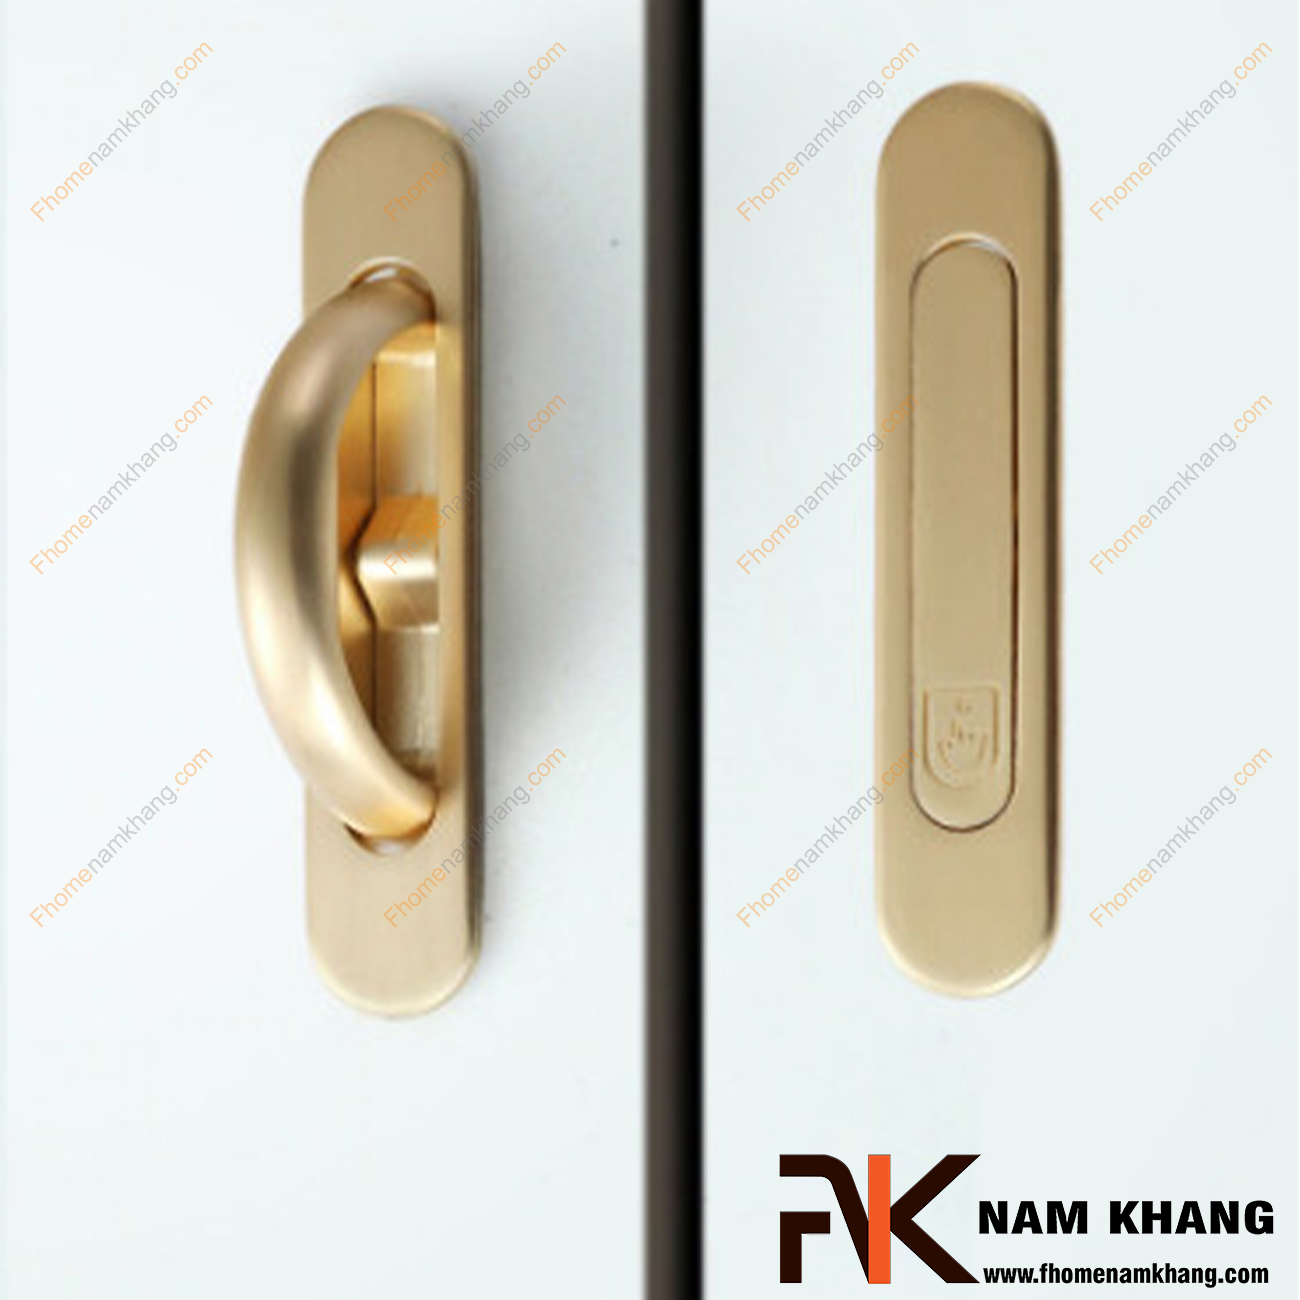 Tay âm lật kéo màu vàng NK436-V là dạng tay nắm âm tủ độc đáo, sản phẩm được lắp âm vào trong cánh cửa tủ như các dạng tay nắm âm khác tuy nhiên phần để nắm kéo mở có thêm một thao tác vấn vào phần thân ở giữa để phần nắm kéo được xoay ra.